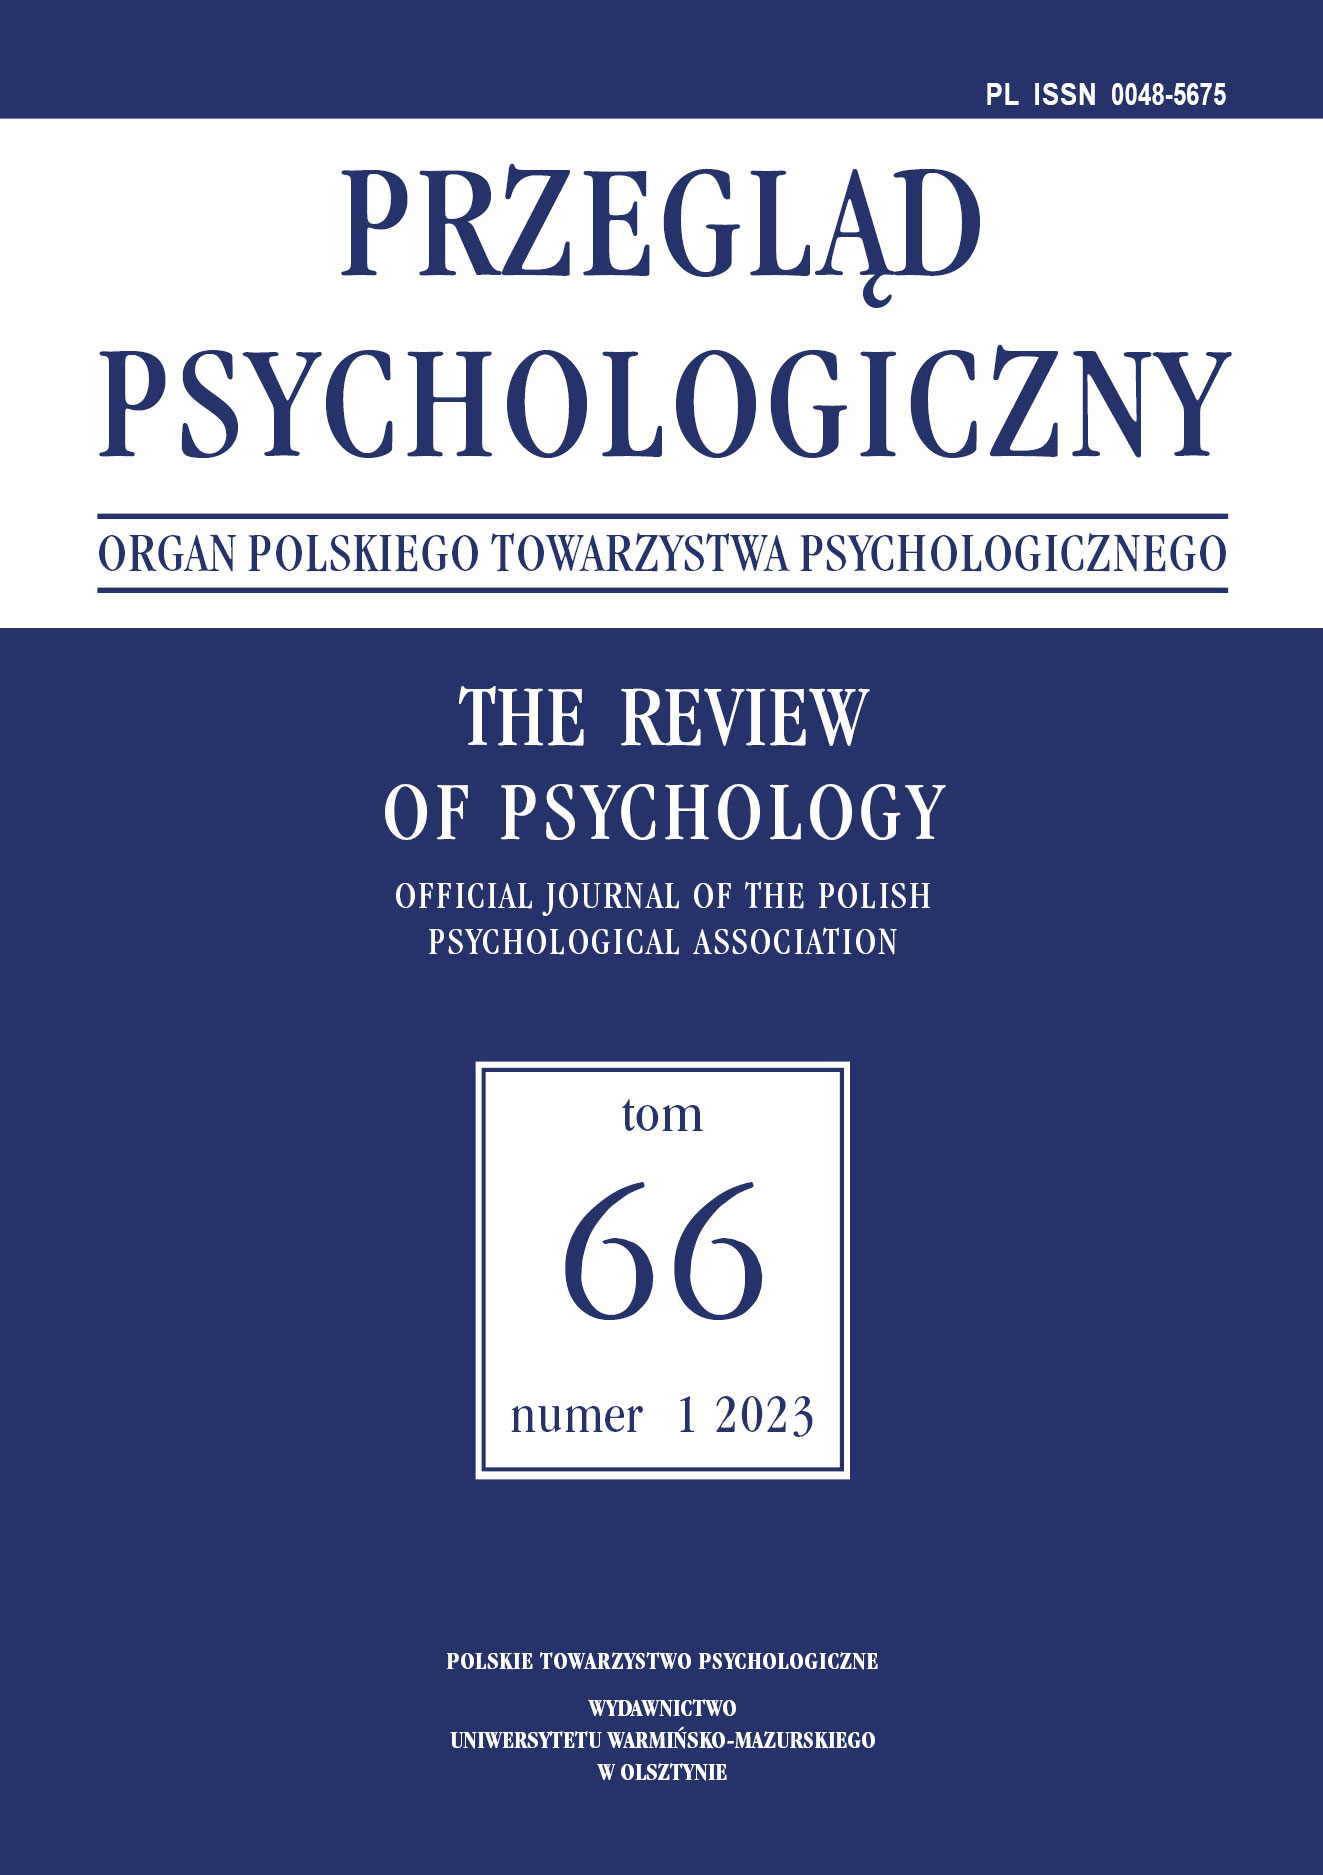 Wprowadzenie do teorii wnioskowania przyczynowego dla psychologów: testowalne
i nietestowalne założenia przyczynowe i statystyczne